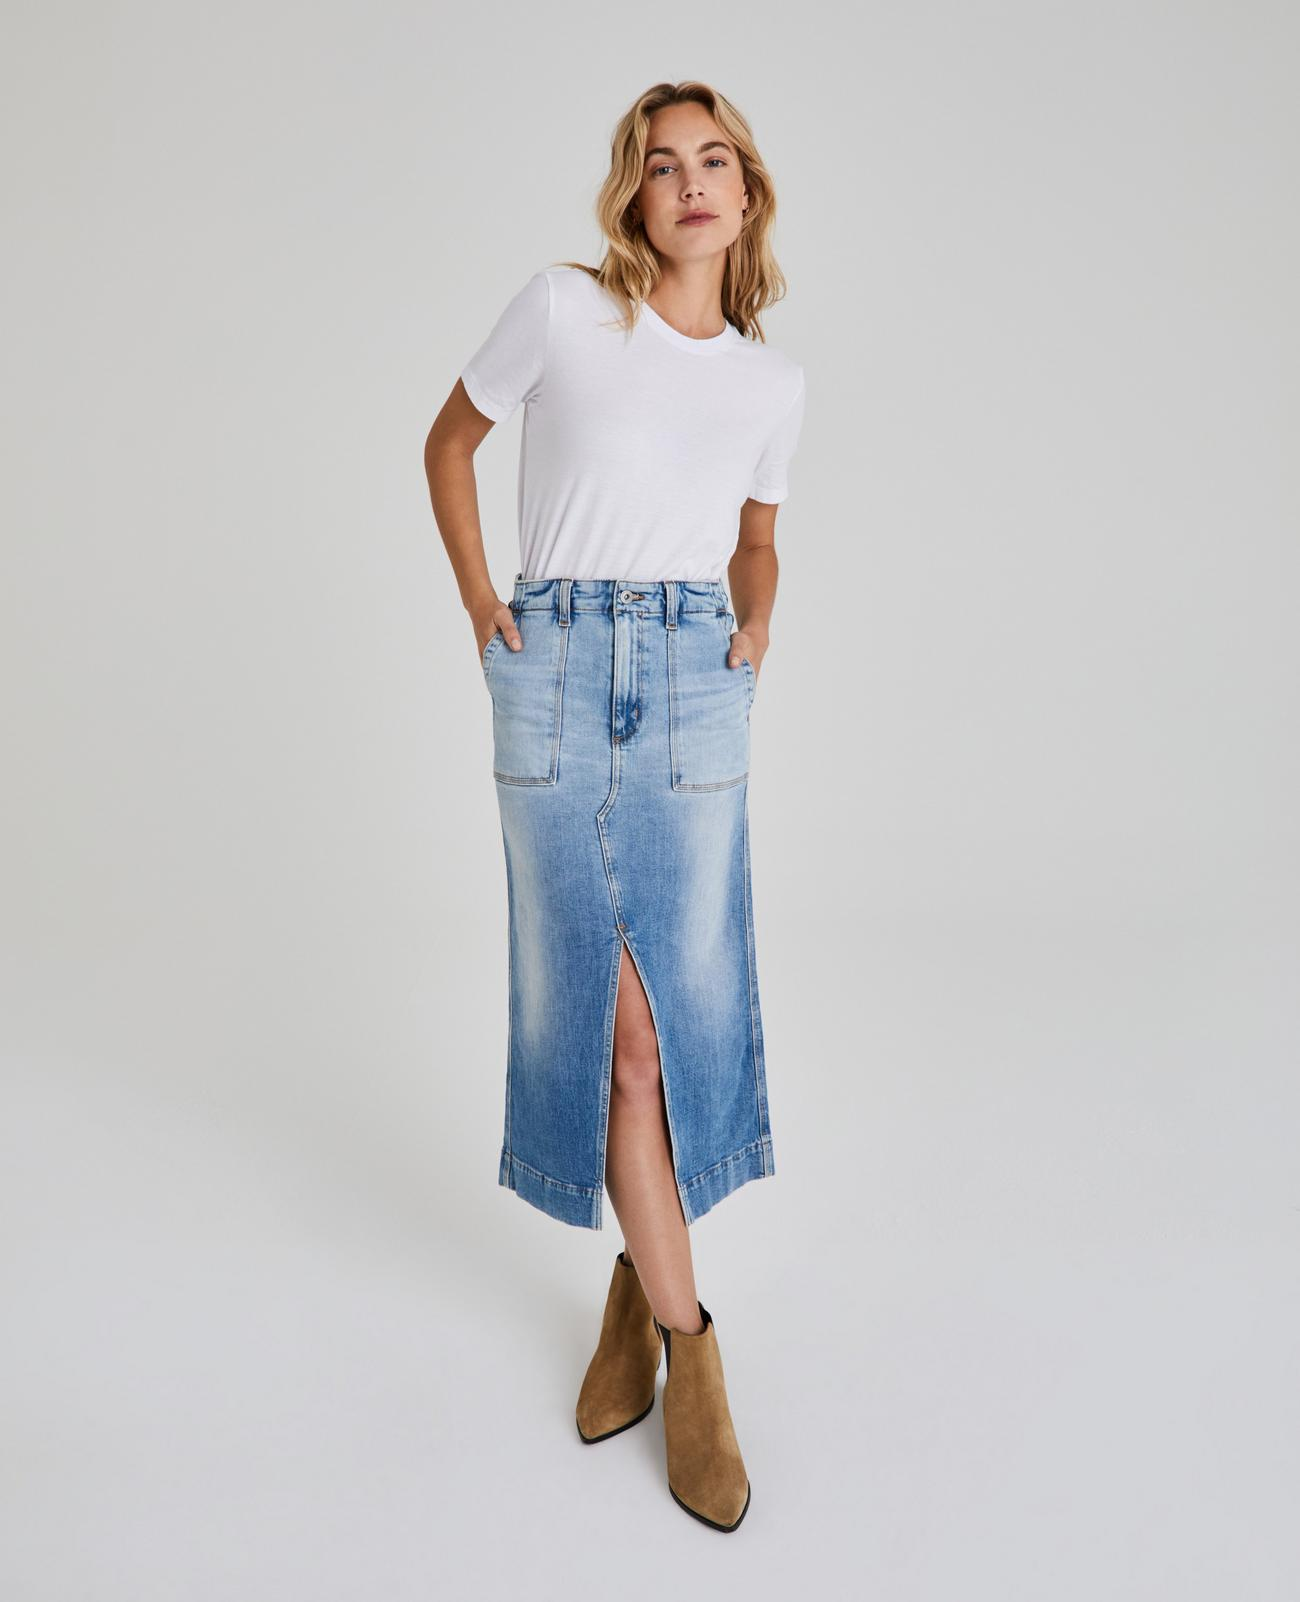 AG Jeans + The Lana Skirt